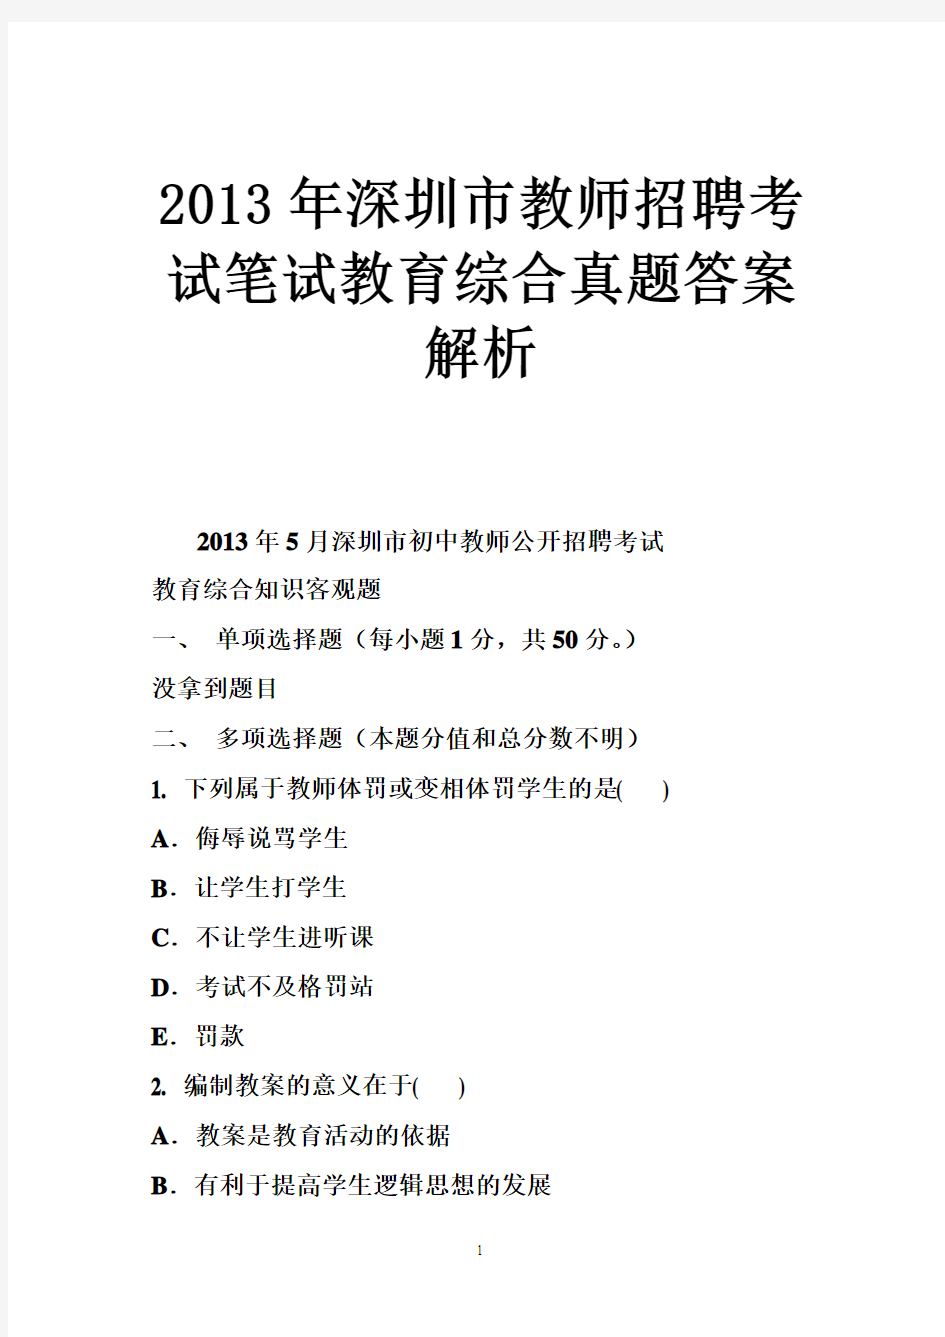 2013年深圳市教师招聘考试笔试教育综合真题答案解析